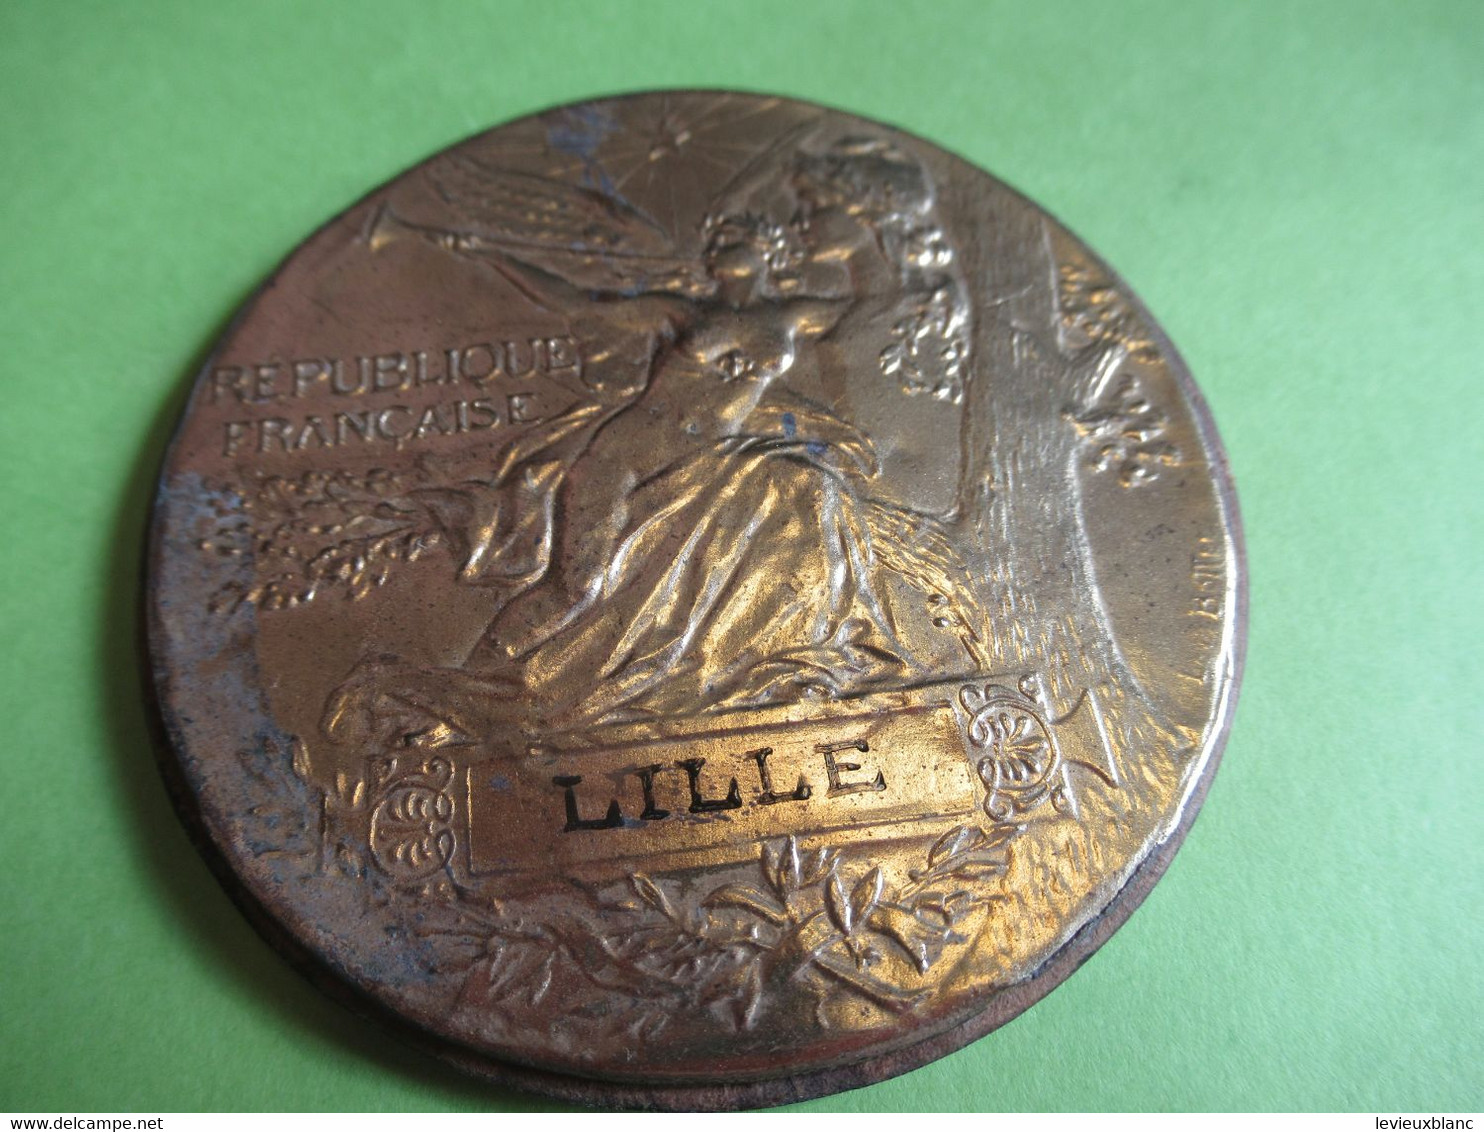 Repro.  De Médaille De Concours Pour Encadrement/Feuille Laiton Et Cuir Emboutis/Lille/L BOTTEE/Vers 1890-1900    MED396 - Frankreich